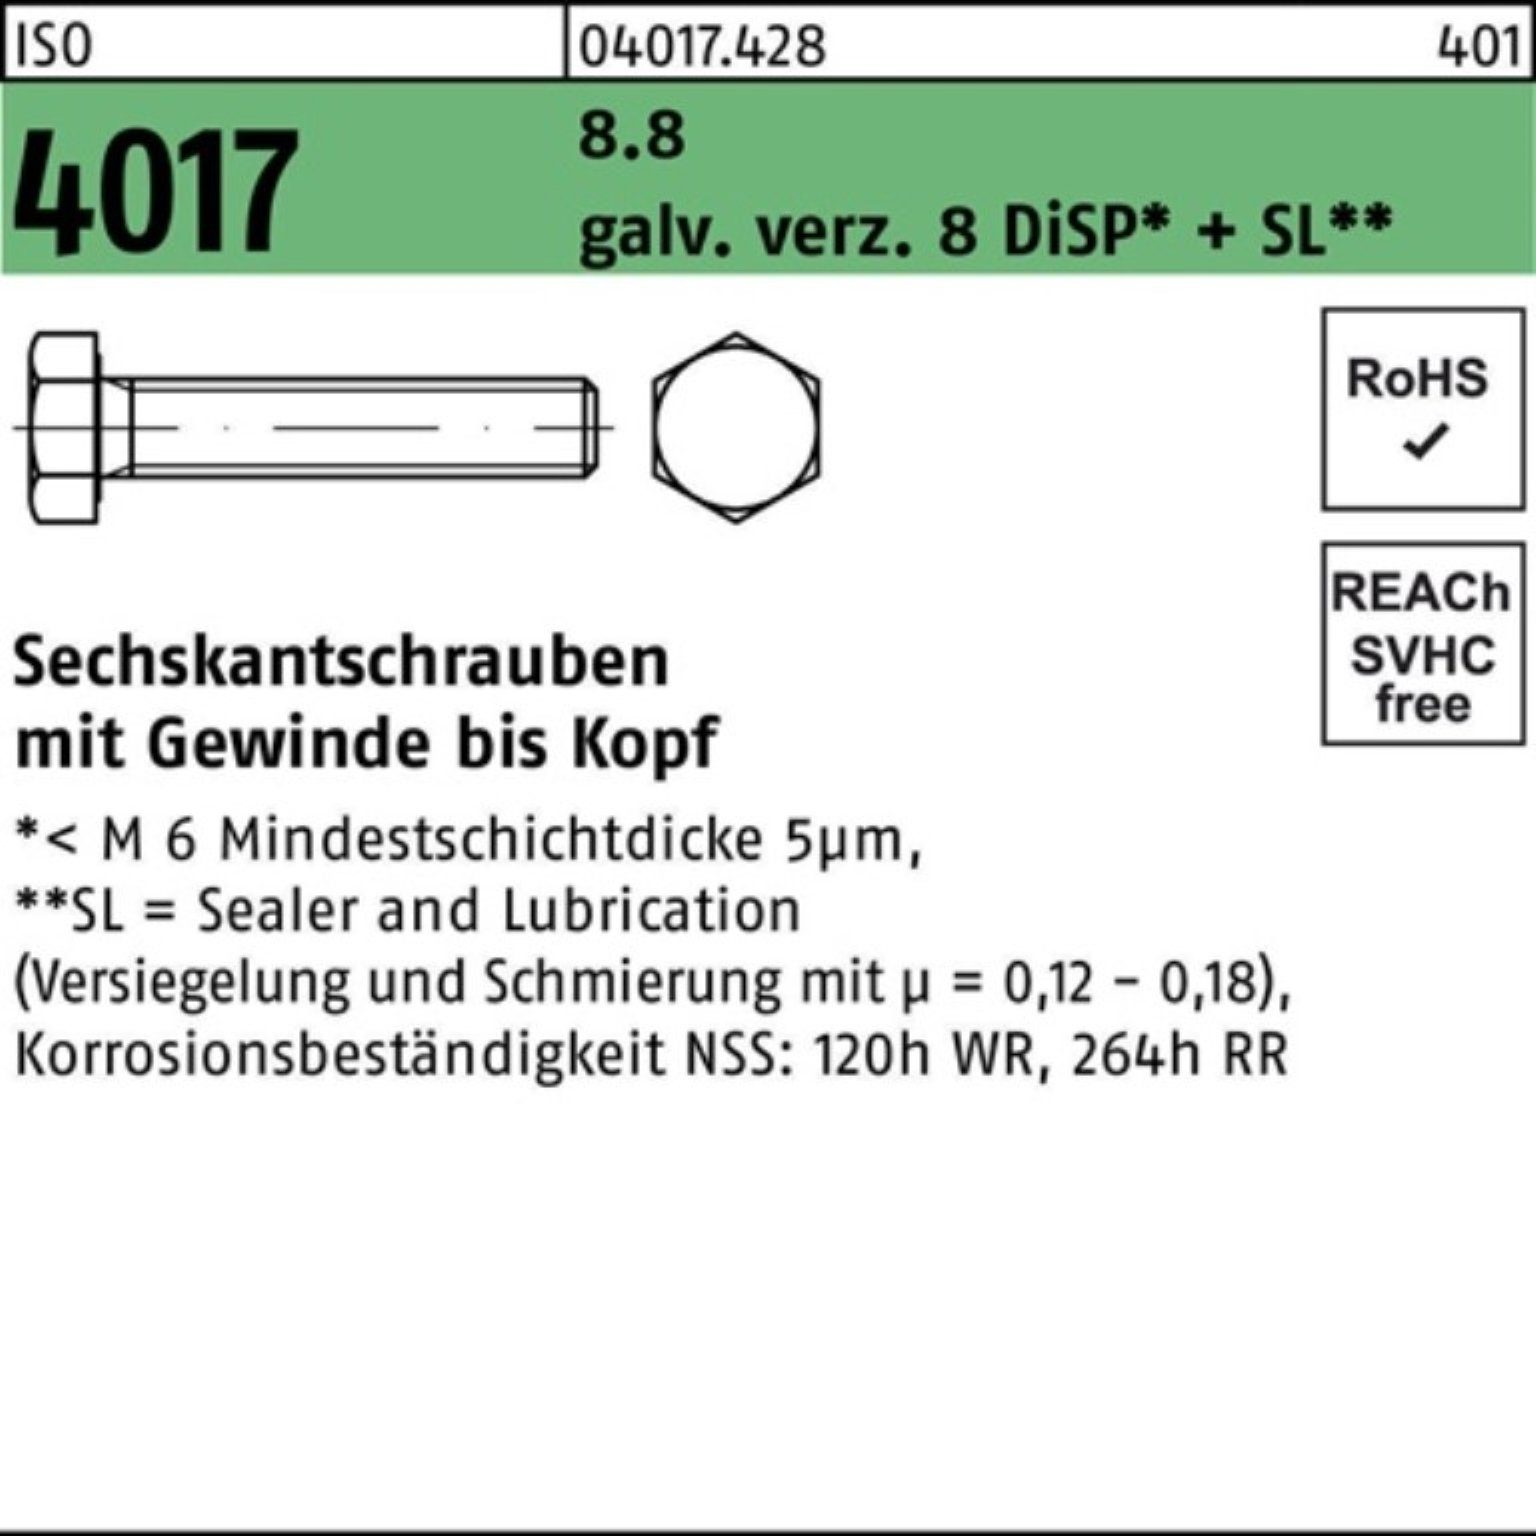 Bufab Sechskantschraube 100er Pack Sechskantschraube M20x 8 galv.verz. VG 4017 ISO 75 DiSP 8.8